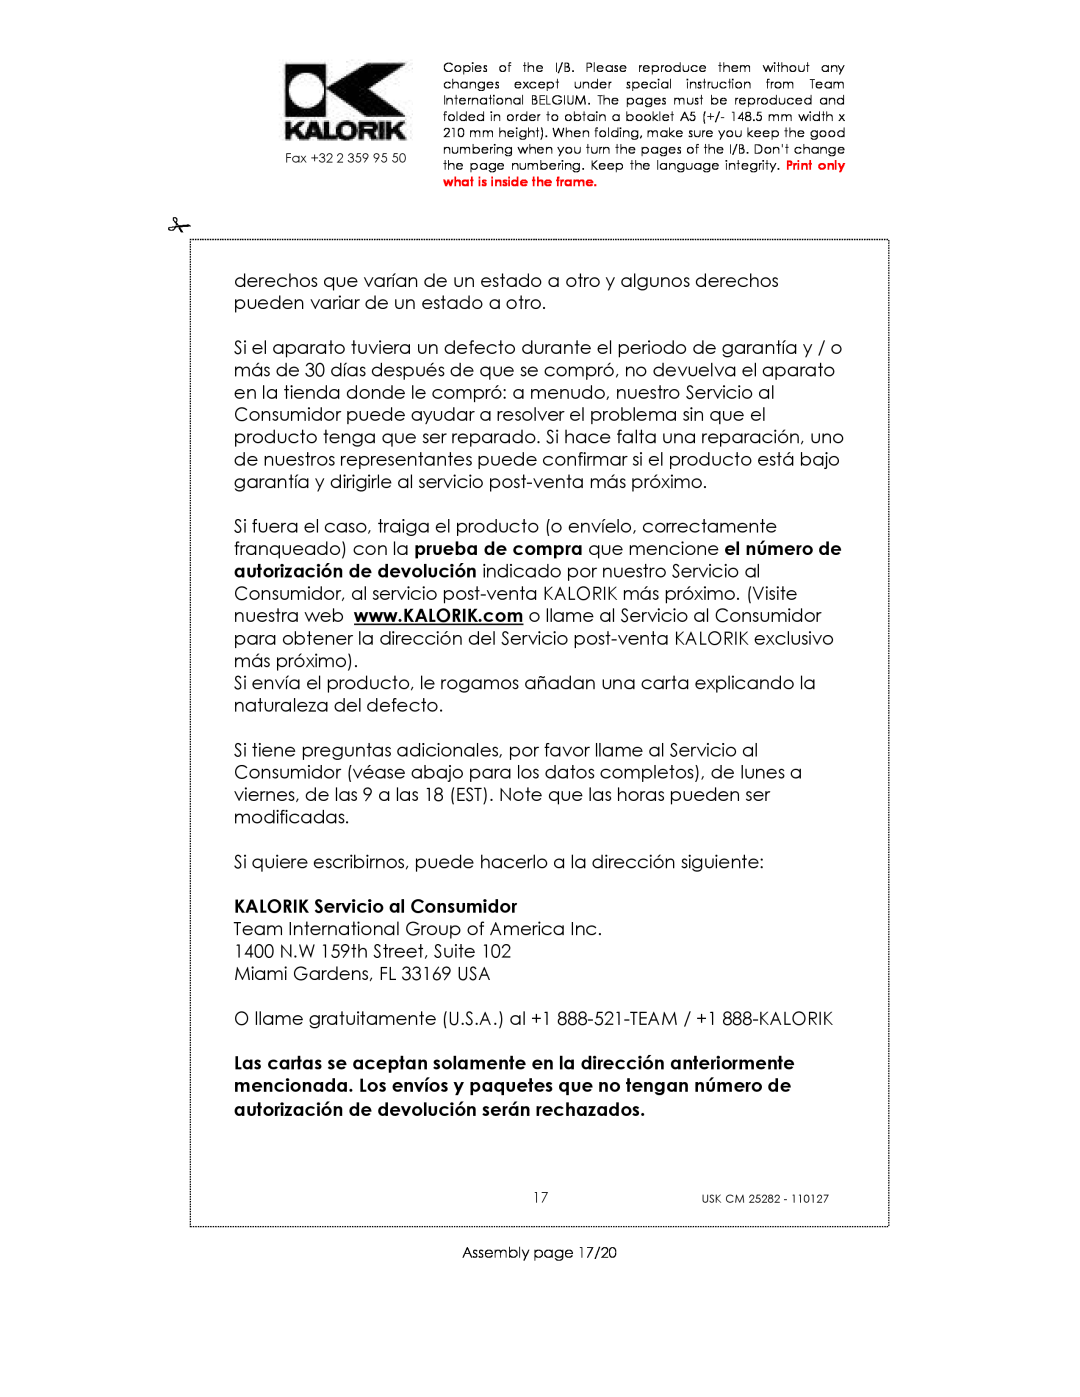 Kalorik USK CM 25282 manual KALORIK Servicio al Consumidor 